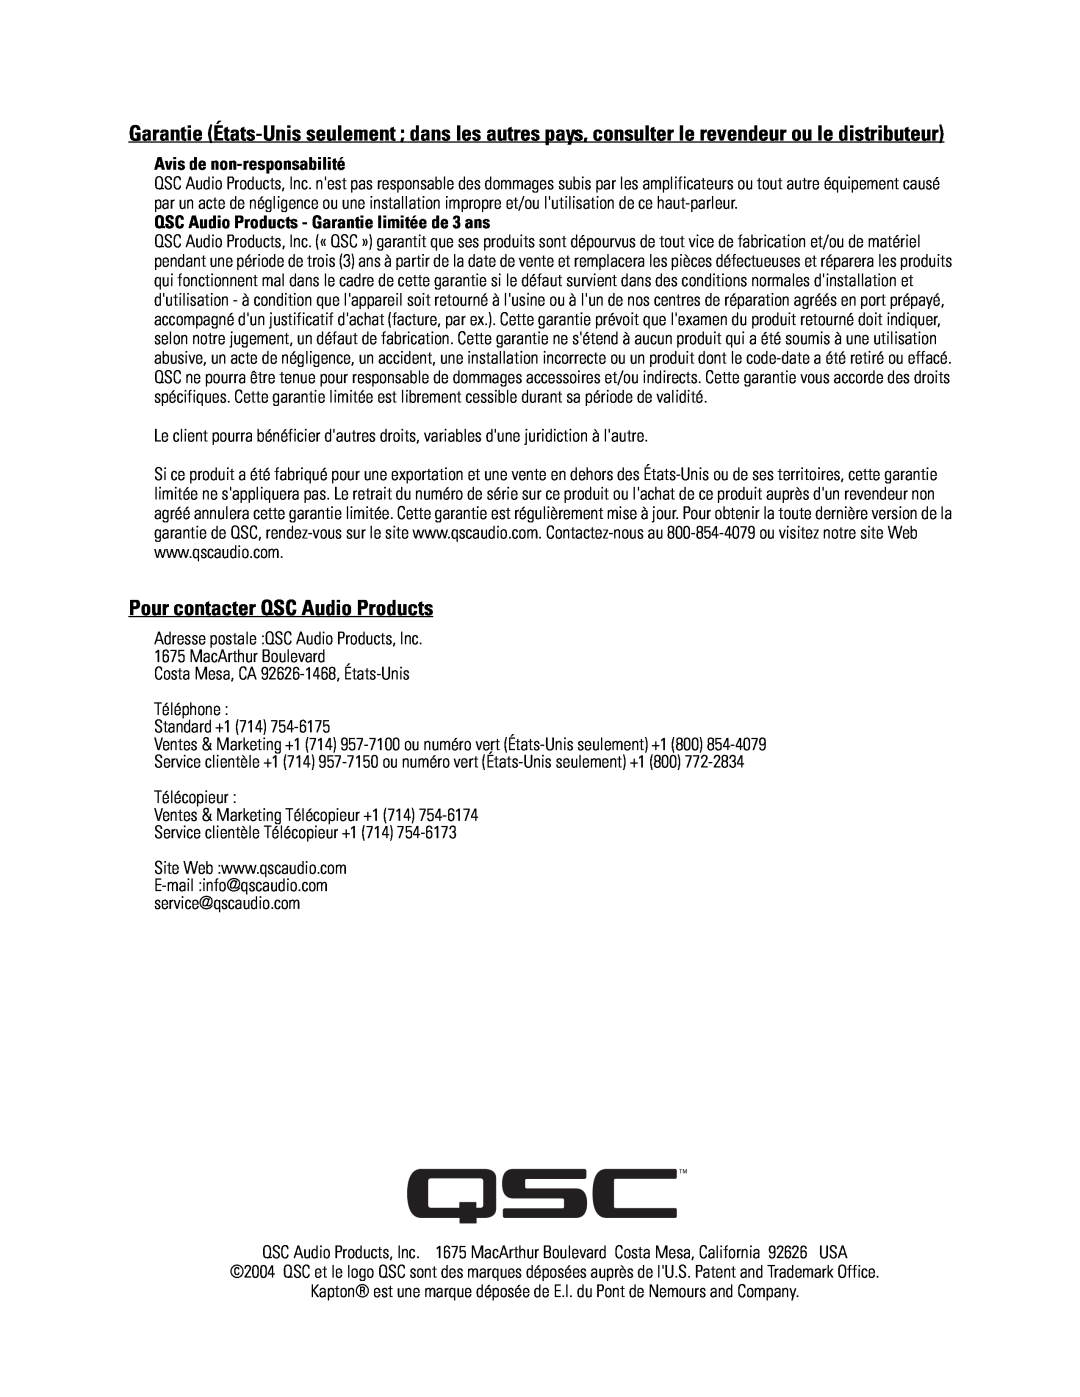 QSC Audio SC-322 specifications Pour contacter QSC Audio Products, Costa Mesa, CA 92626-1468, États-Unis Téléphone 